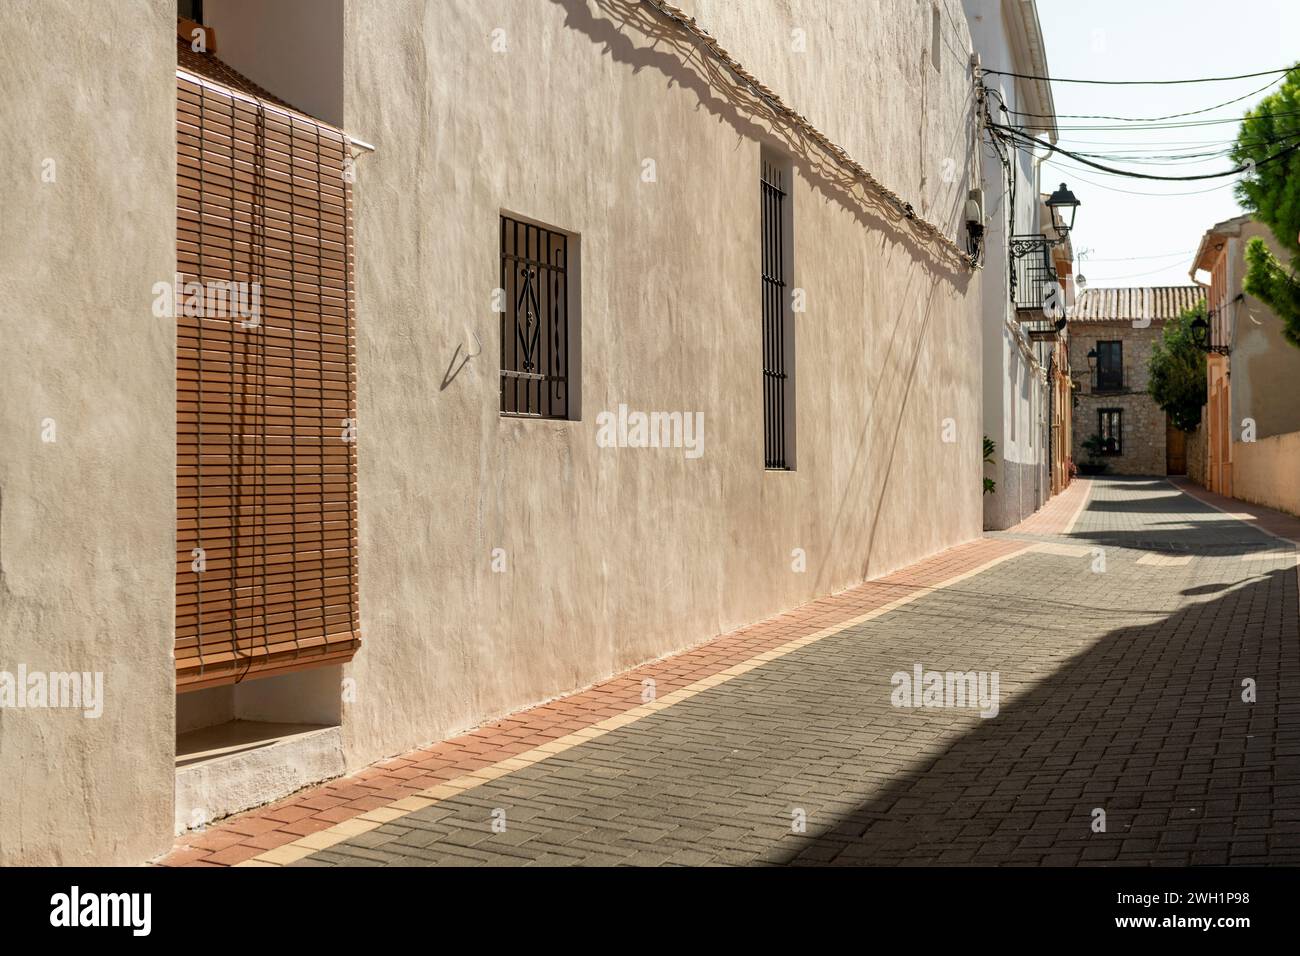 Eine traditionelle mediterrane Straße in der Altstadt von Lliber, Costa Blanca, Spanien – Stockfoto Stockfoto